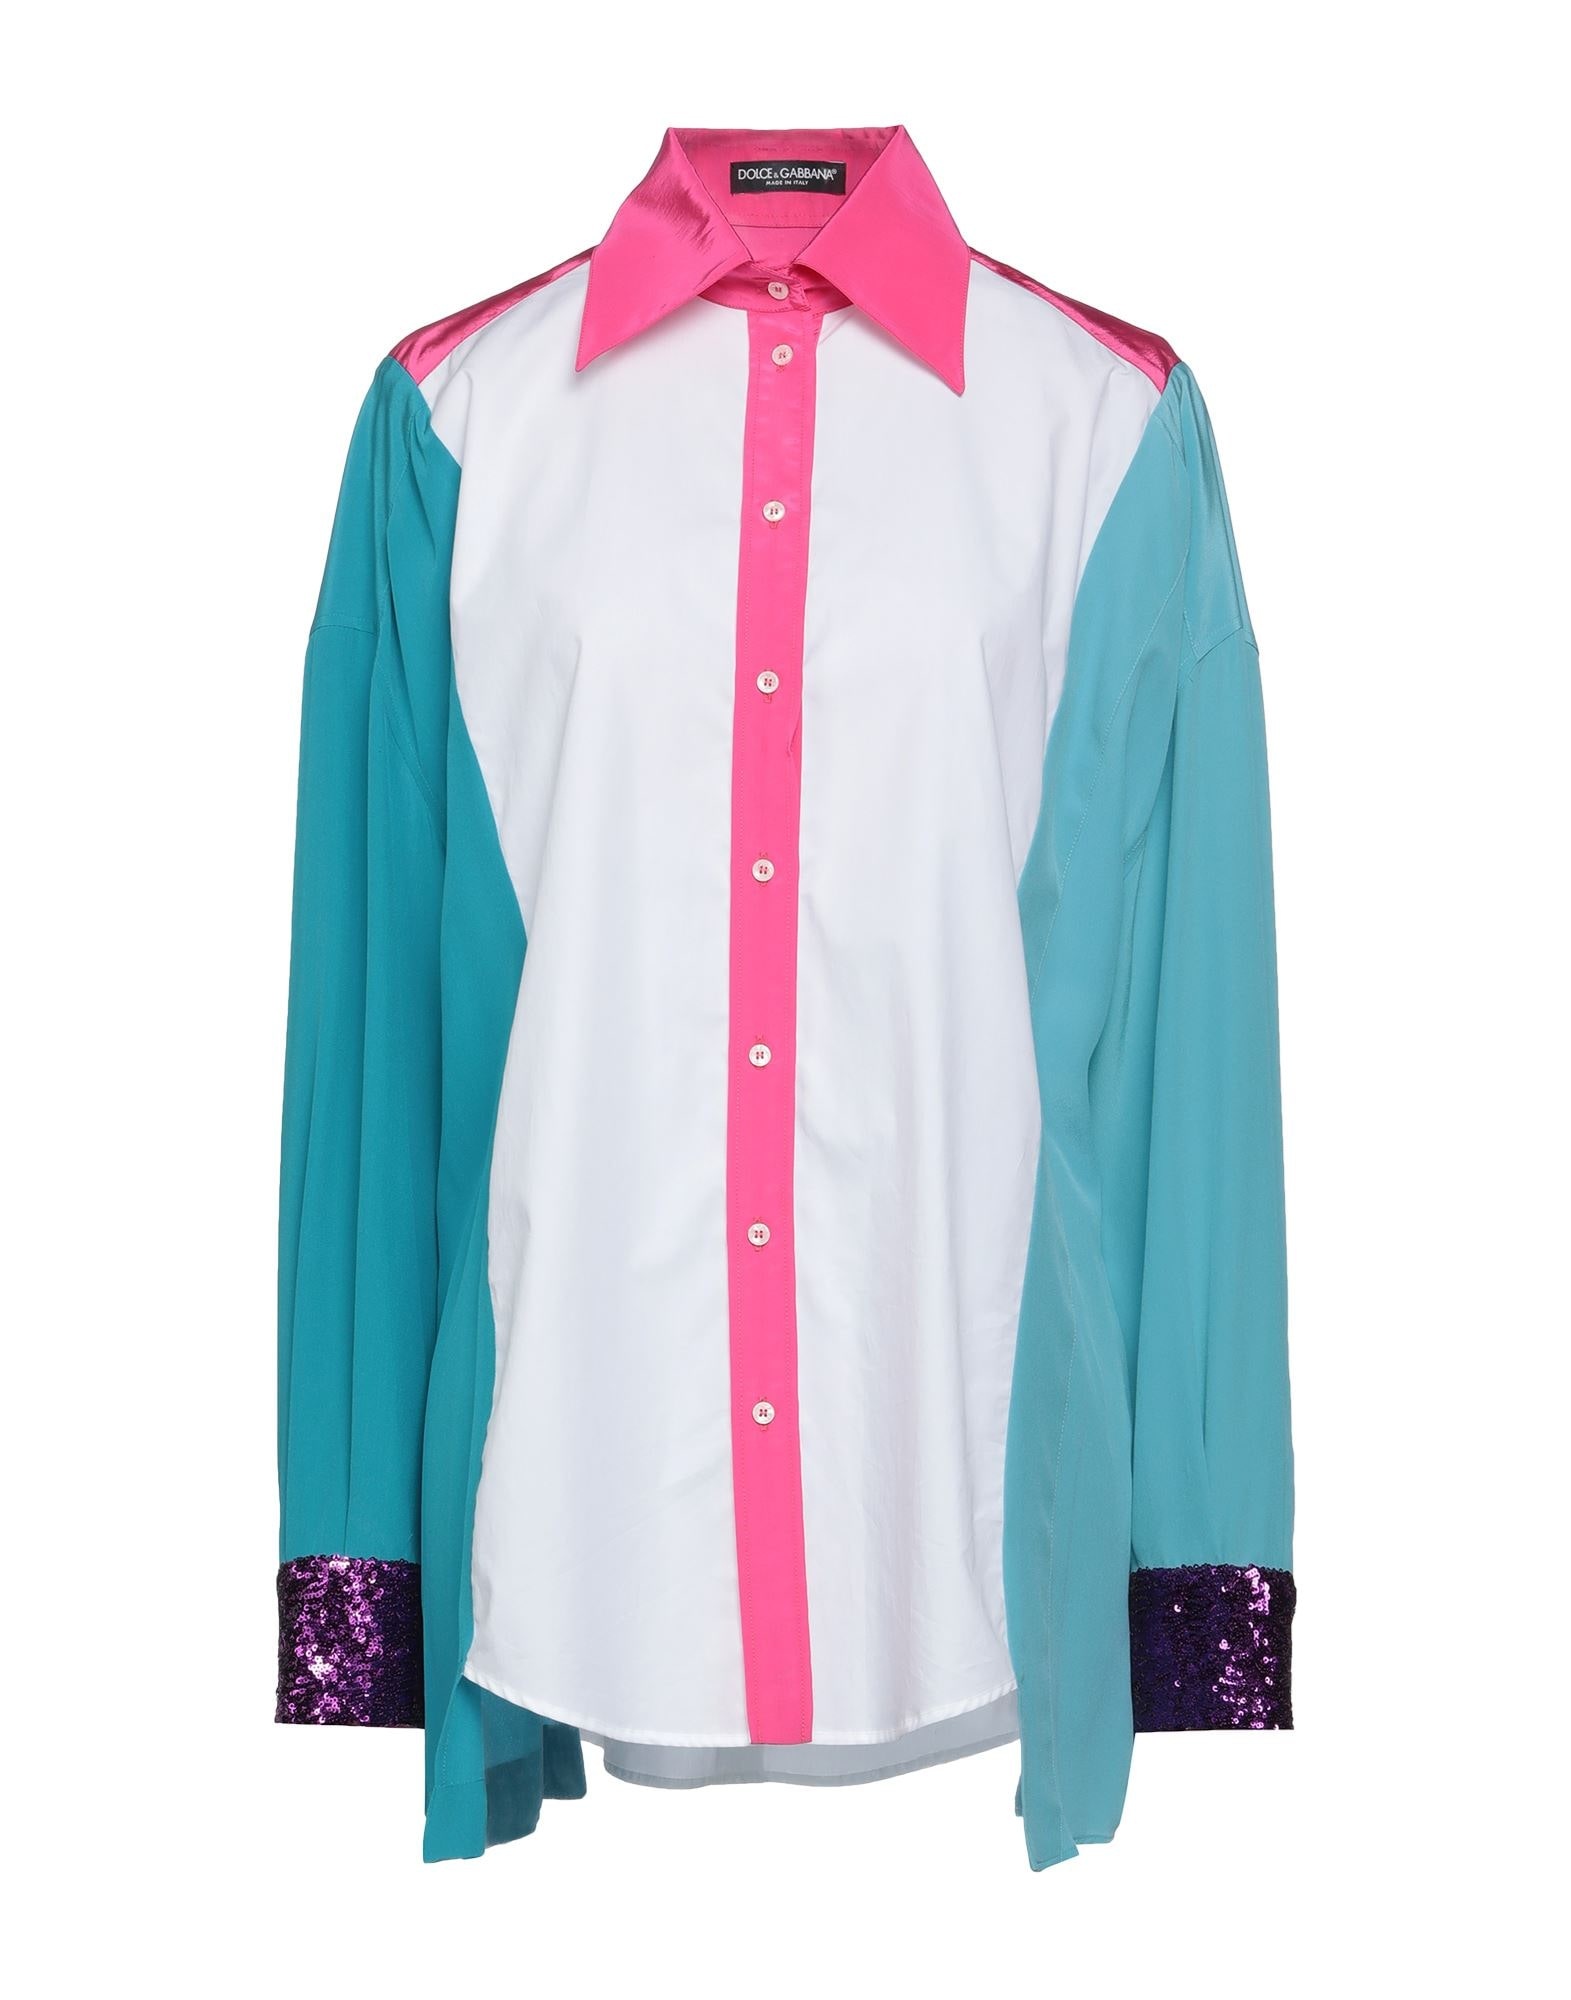 Fuchsia Women's Patterned Shirts & Blouses - 1